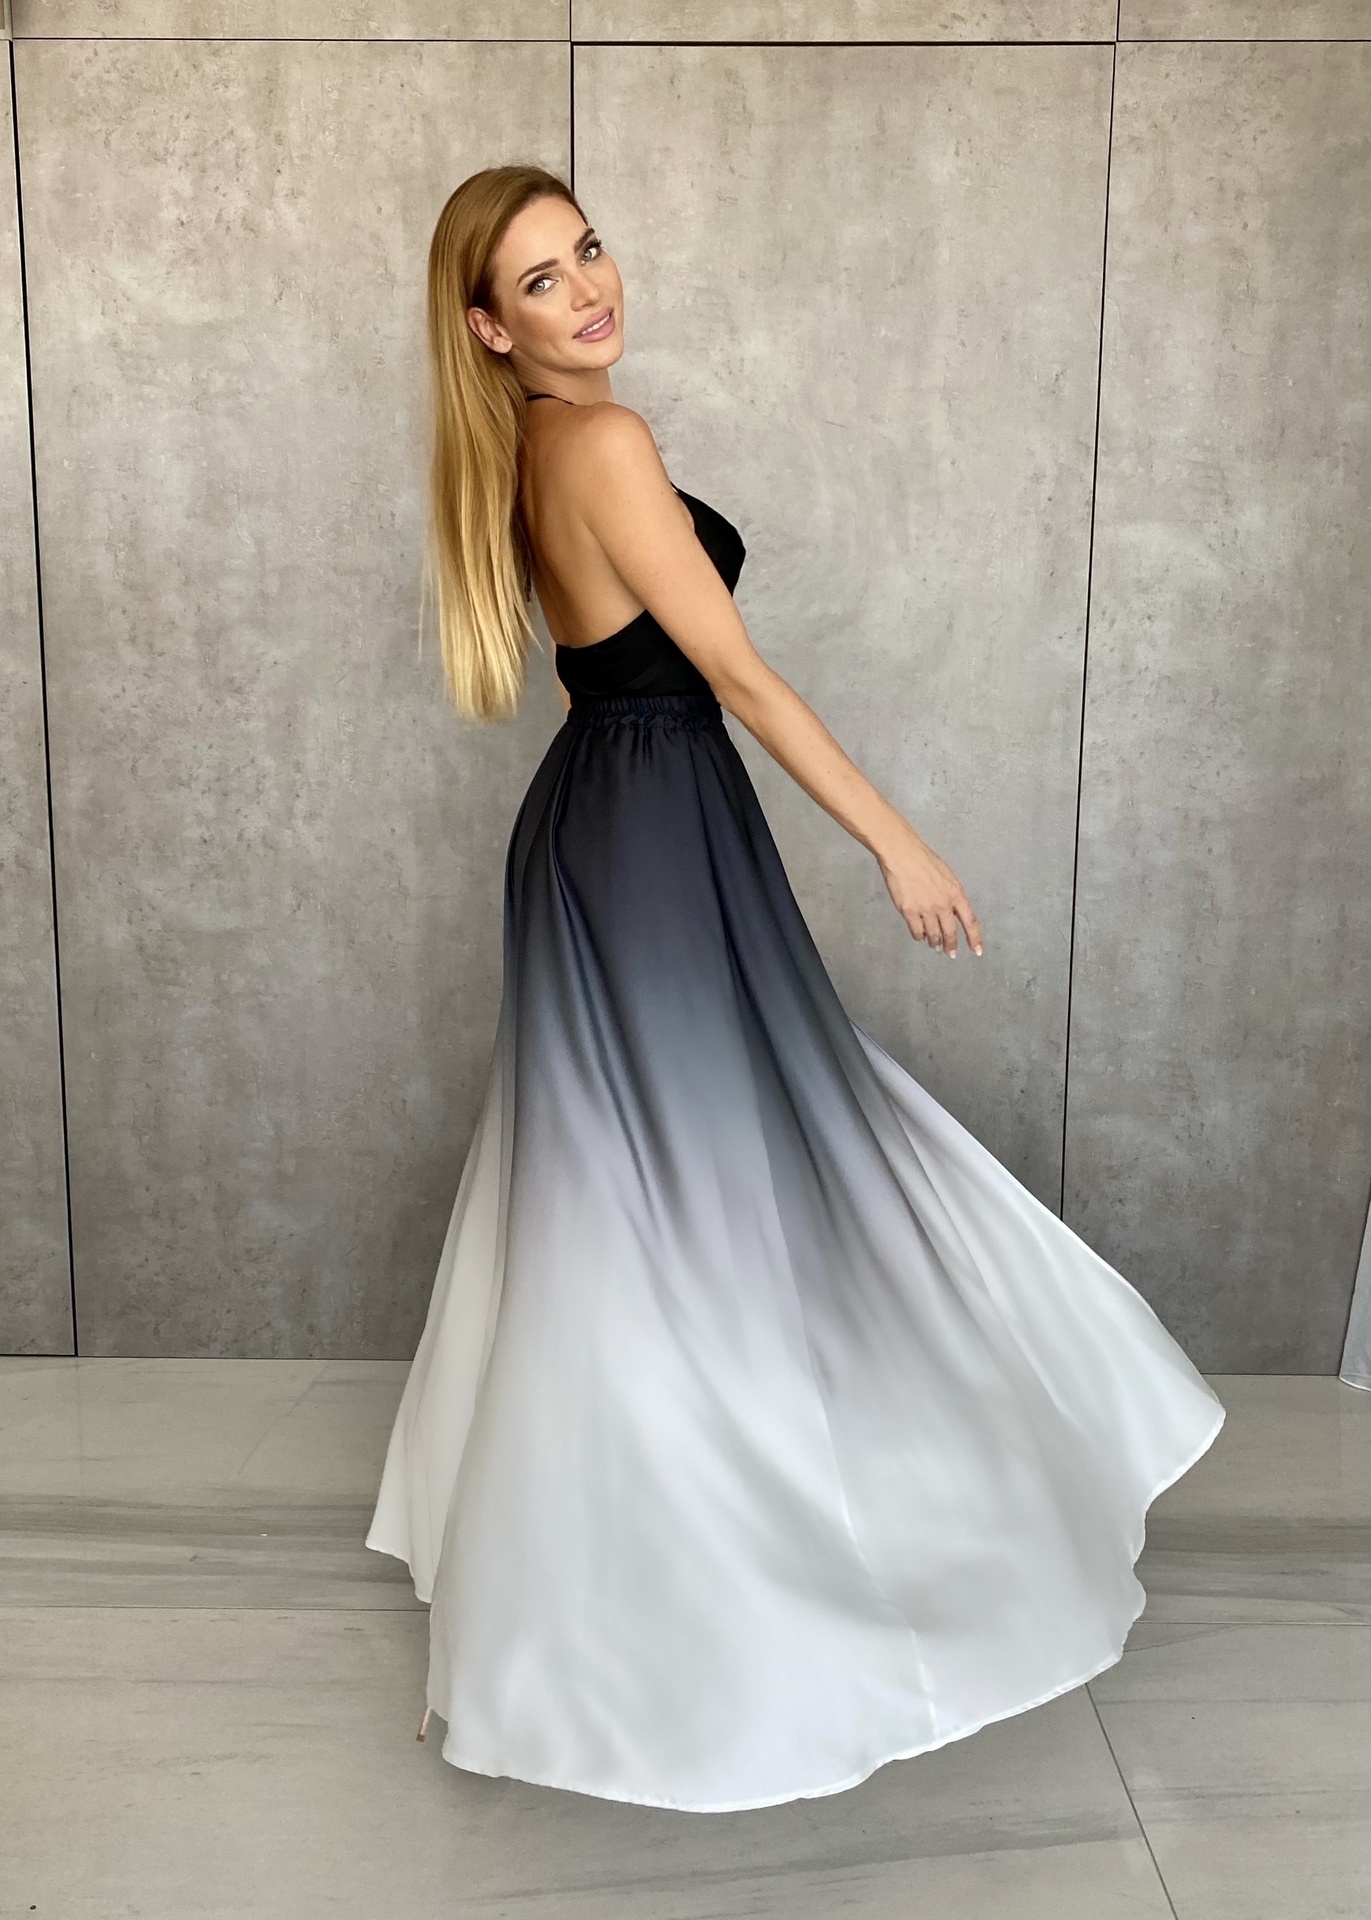 Erin ombré - Černo - bílá | Elegantní dámská černo-bílá dlouhá sukně